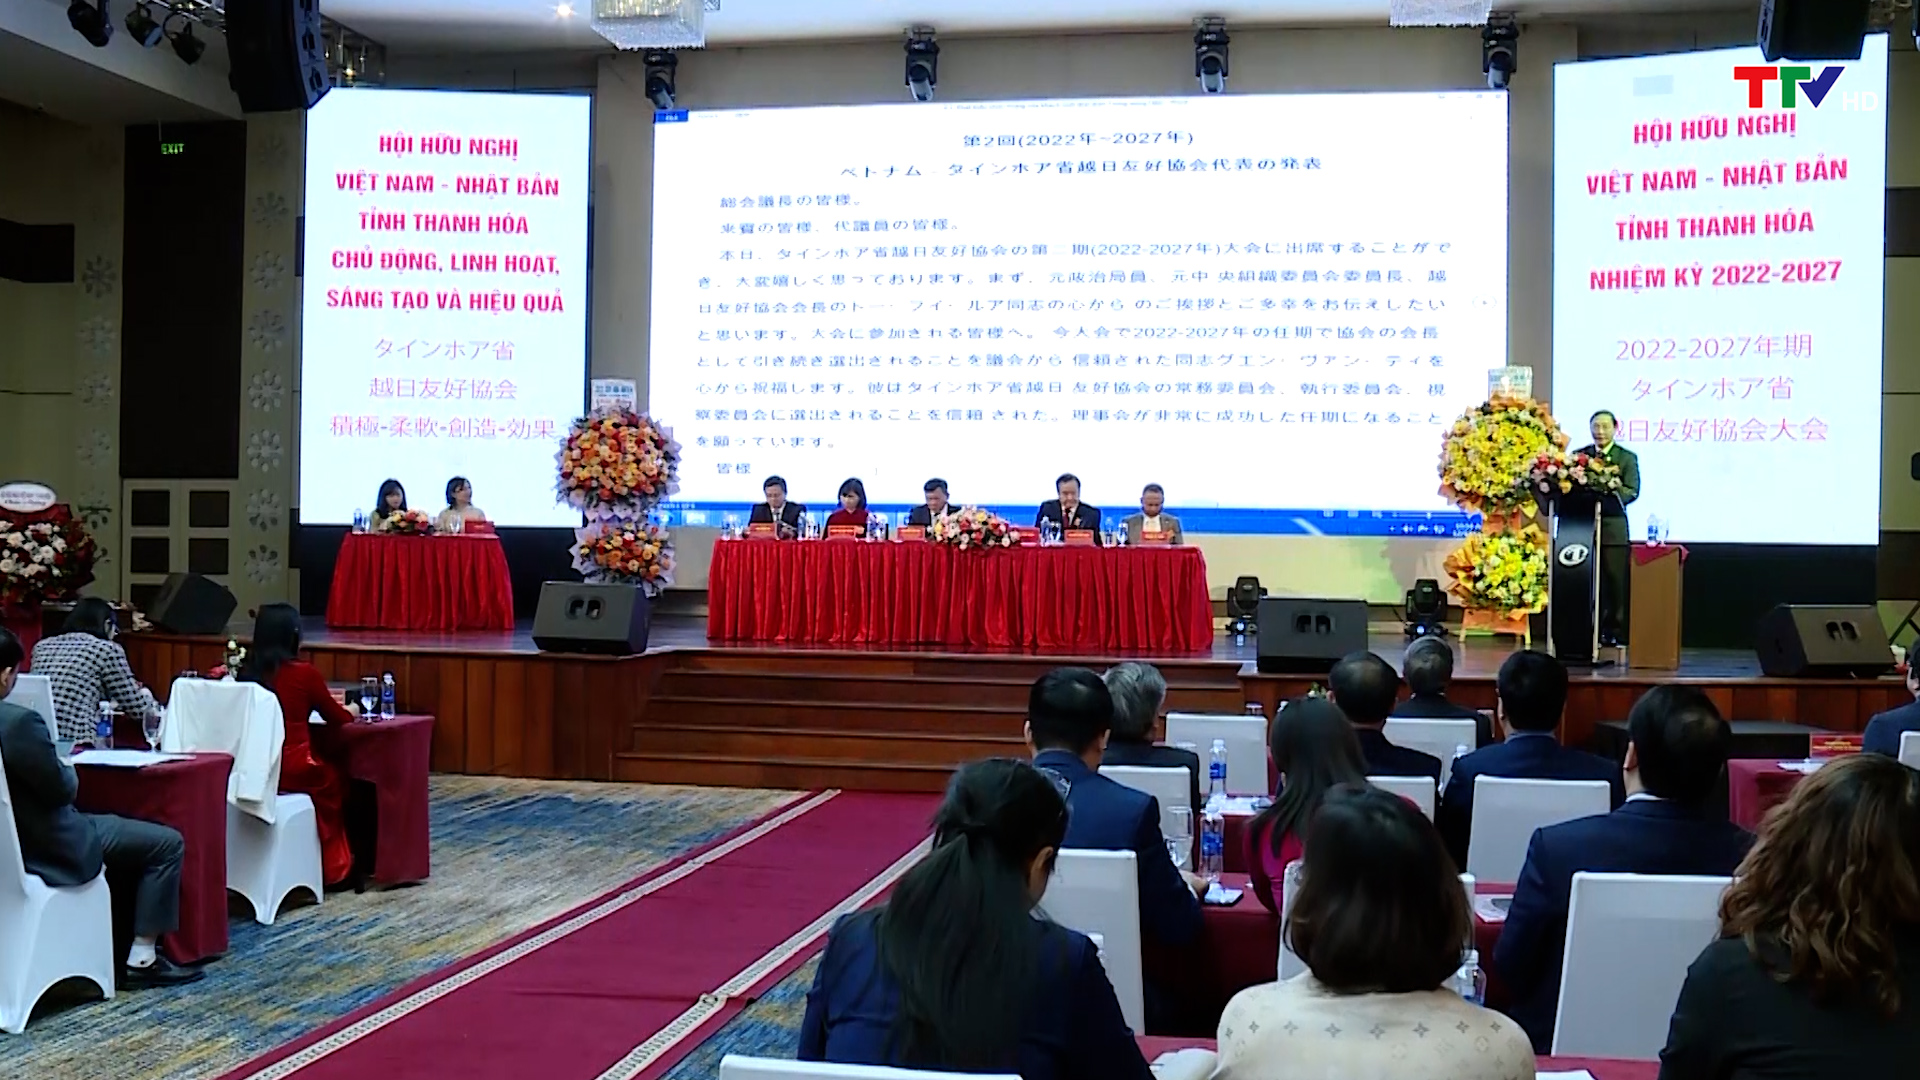 Đại hội Hội hữu nghị Việt Nam-Nhật Bản tỉnh Thanh Hóa nhiệm kỳ 2022-2027  - Ảnh 7.